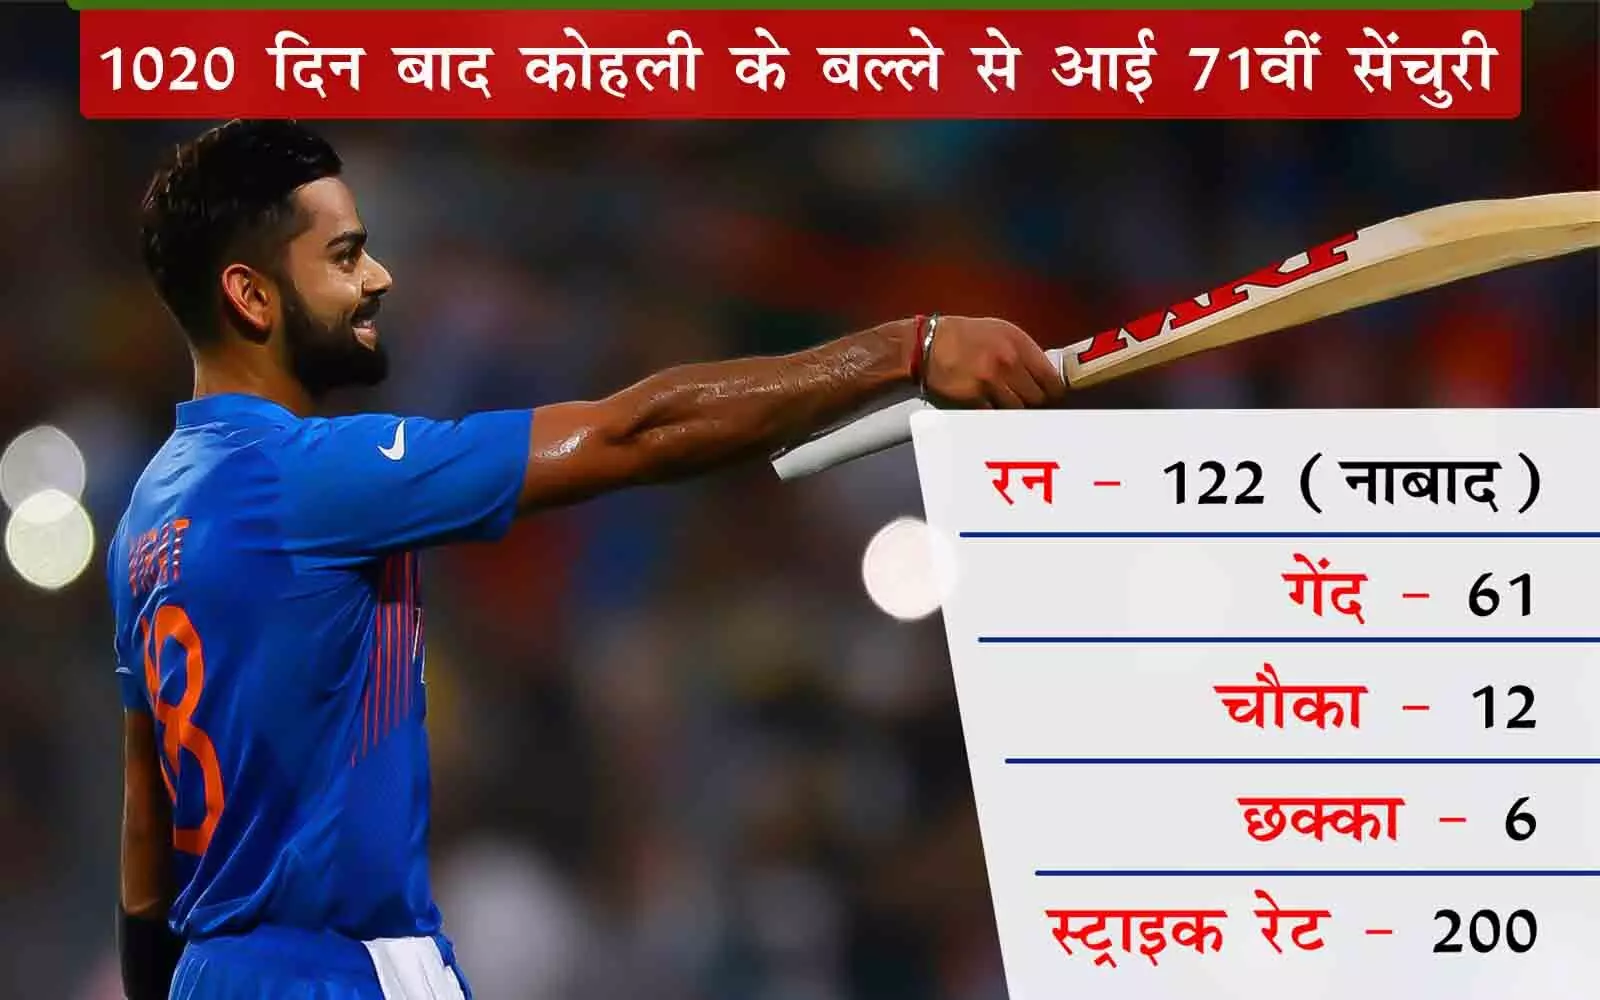 ओपनिंग के साथ सूखा ख़त्म करने वाला महाशतक: विराट T20 में सर्वाधिक स्कोर करने वाले भारतीय क्रिकेटर बनें, कोहली ने पोंटिंग की बराबरी की